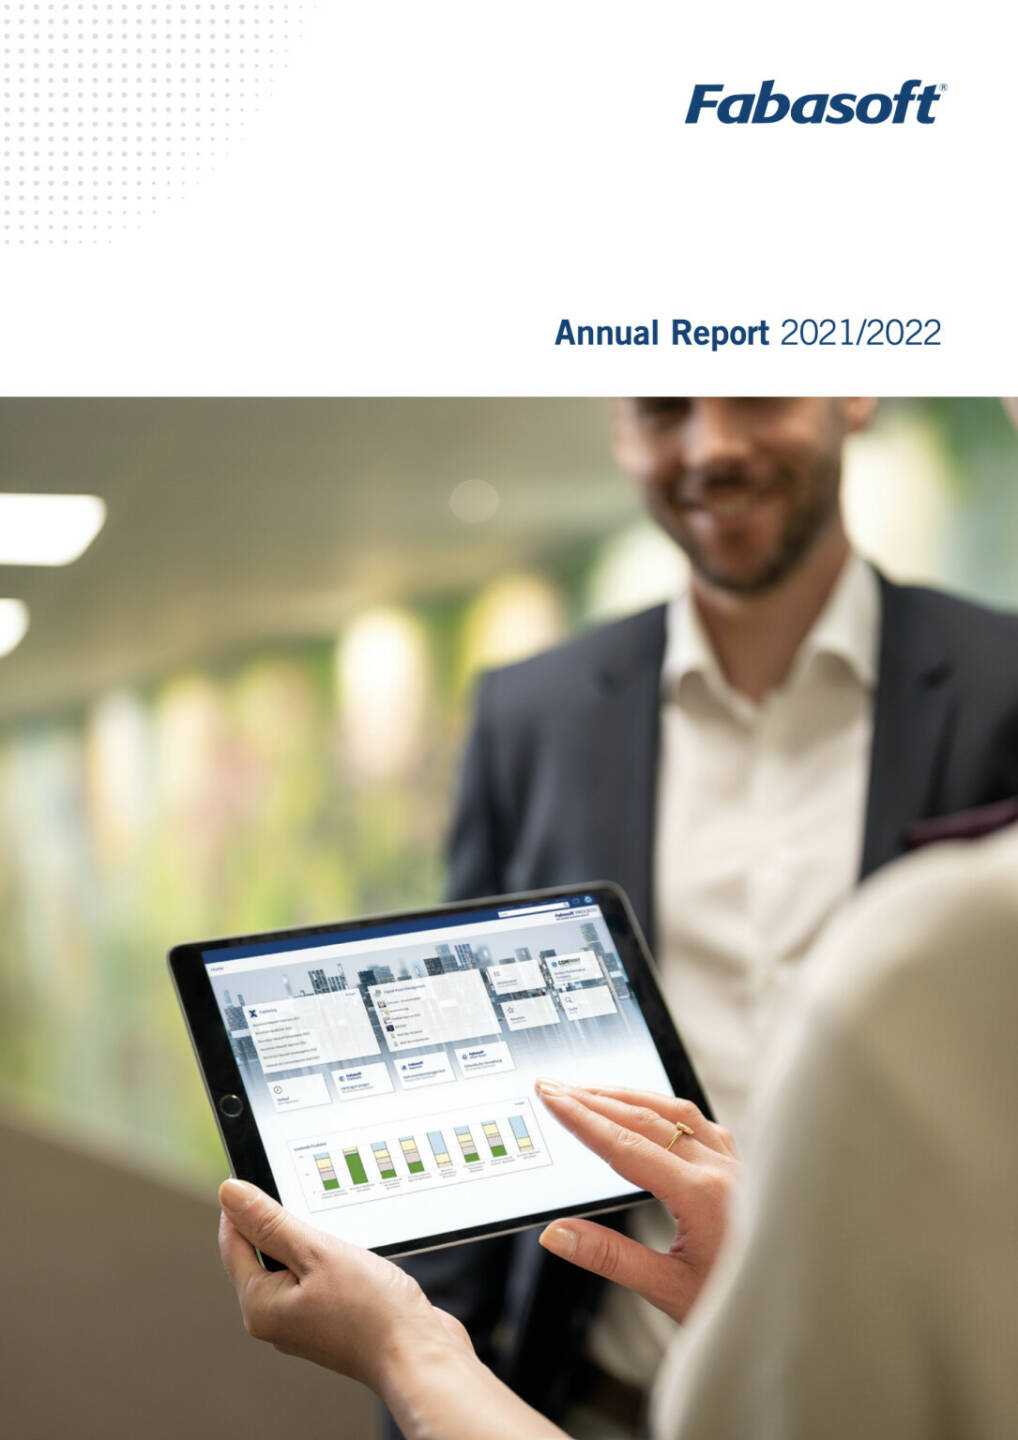 Fabasoft Geschäftsbericht 2021/2022 - https://www.fabasoft.com/de/investor-relations/kapitalmarktinformationen/finanzberichte